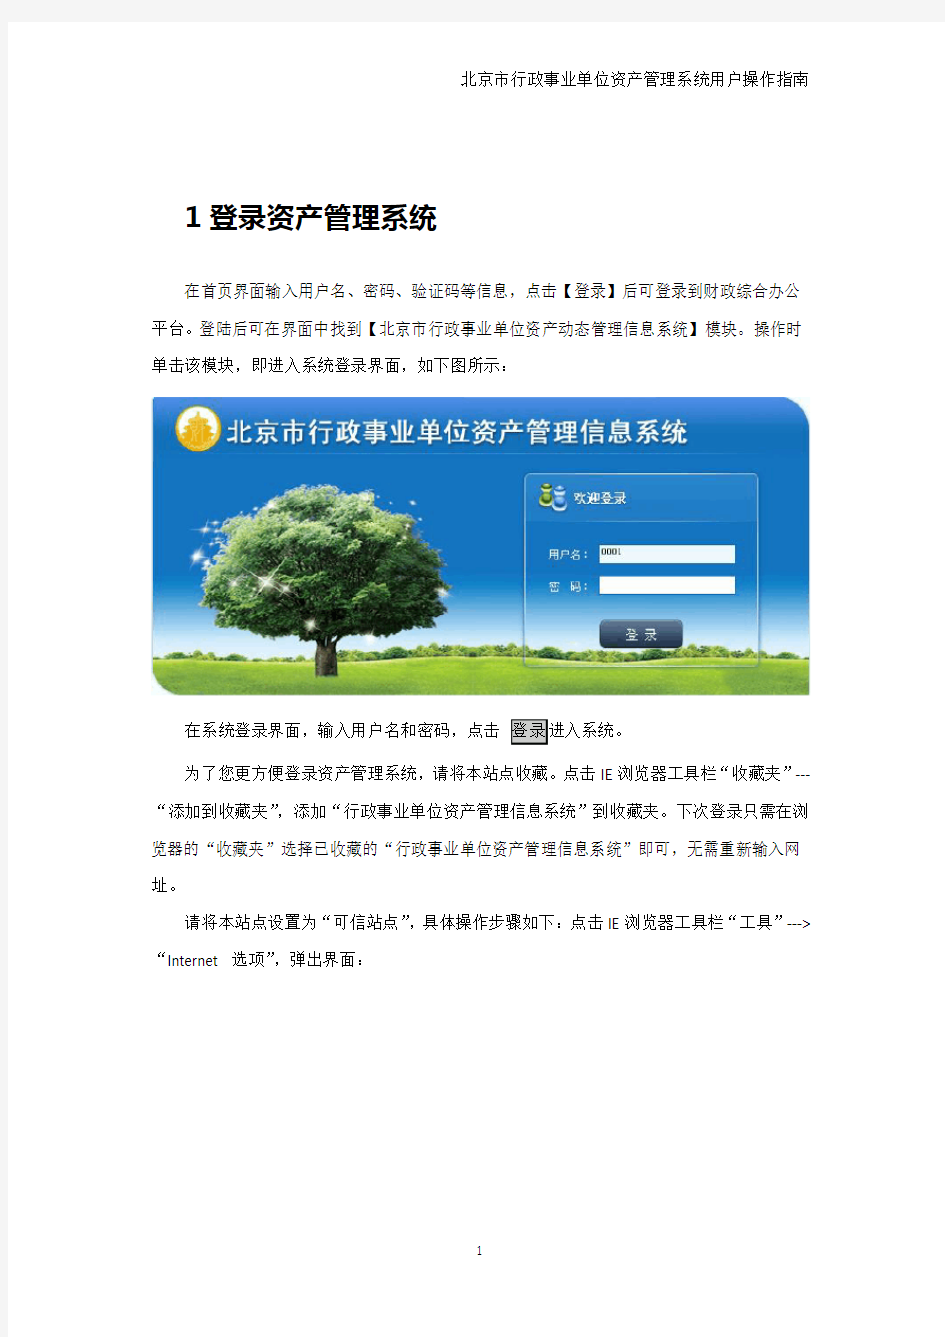 北京市行政事业单位资产管理系统用户操作指南